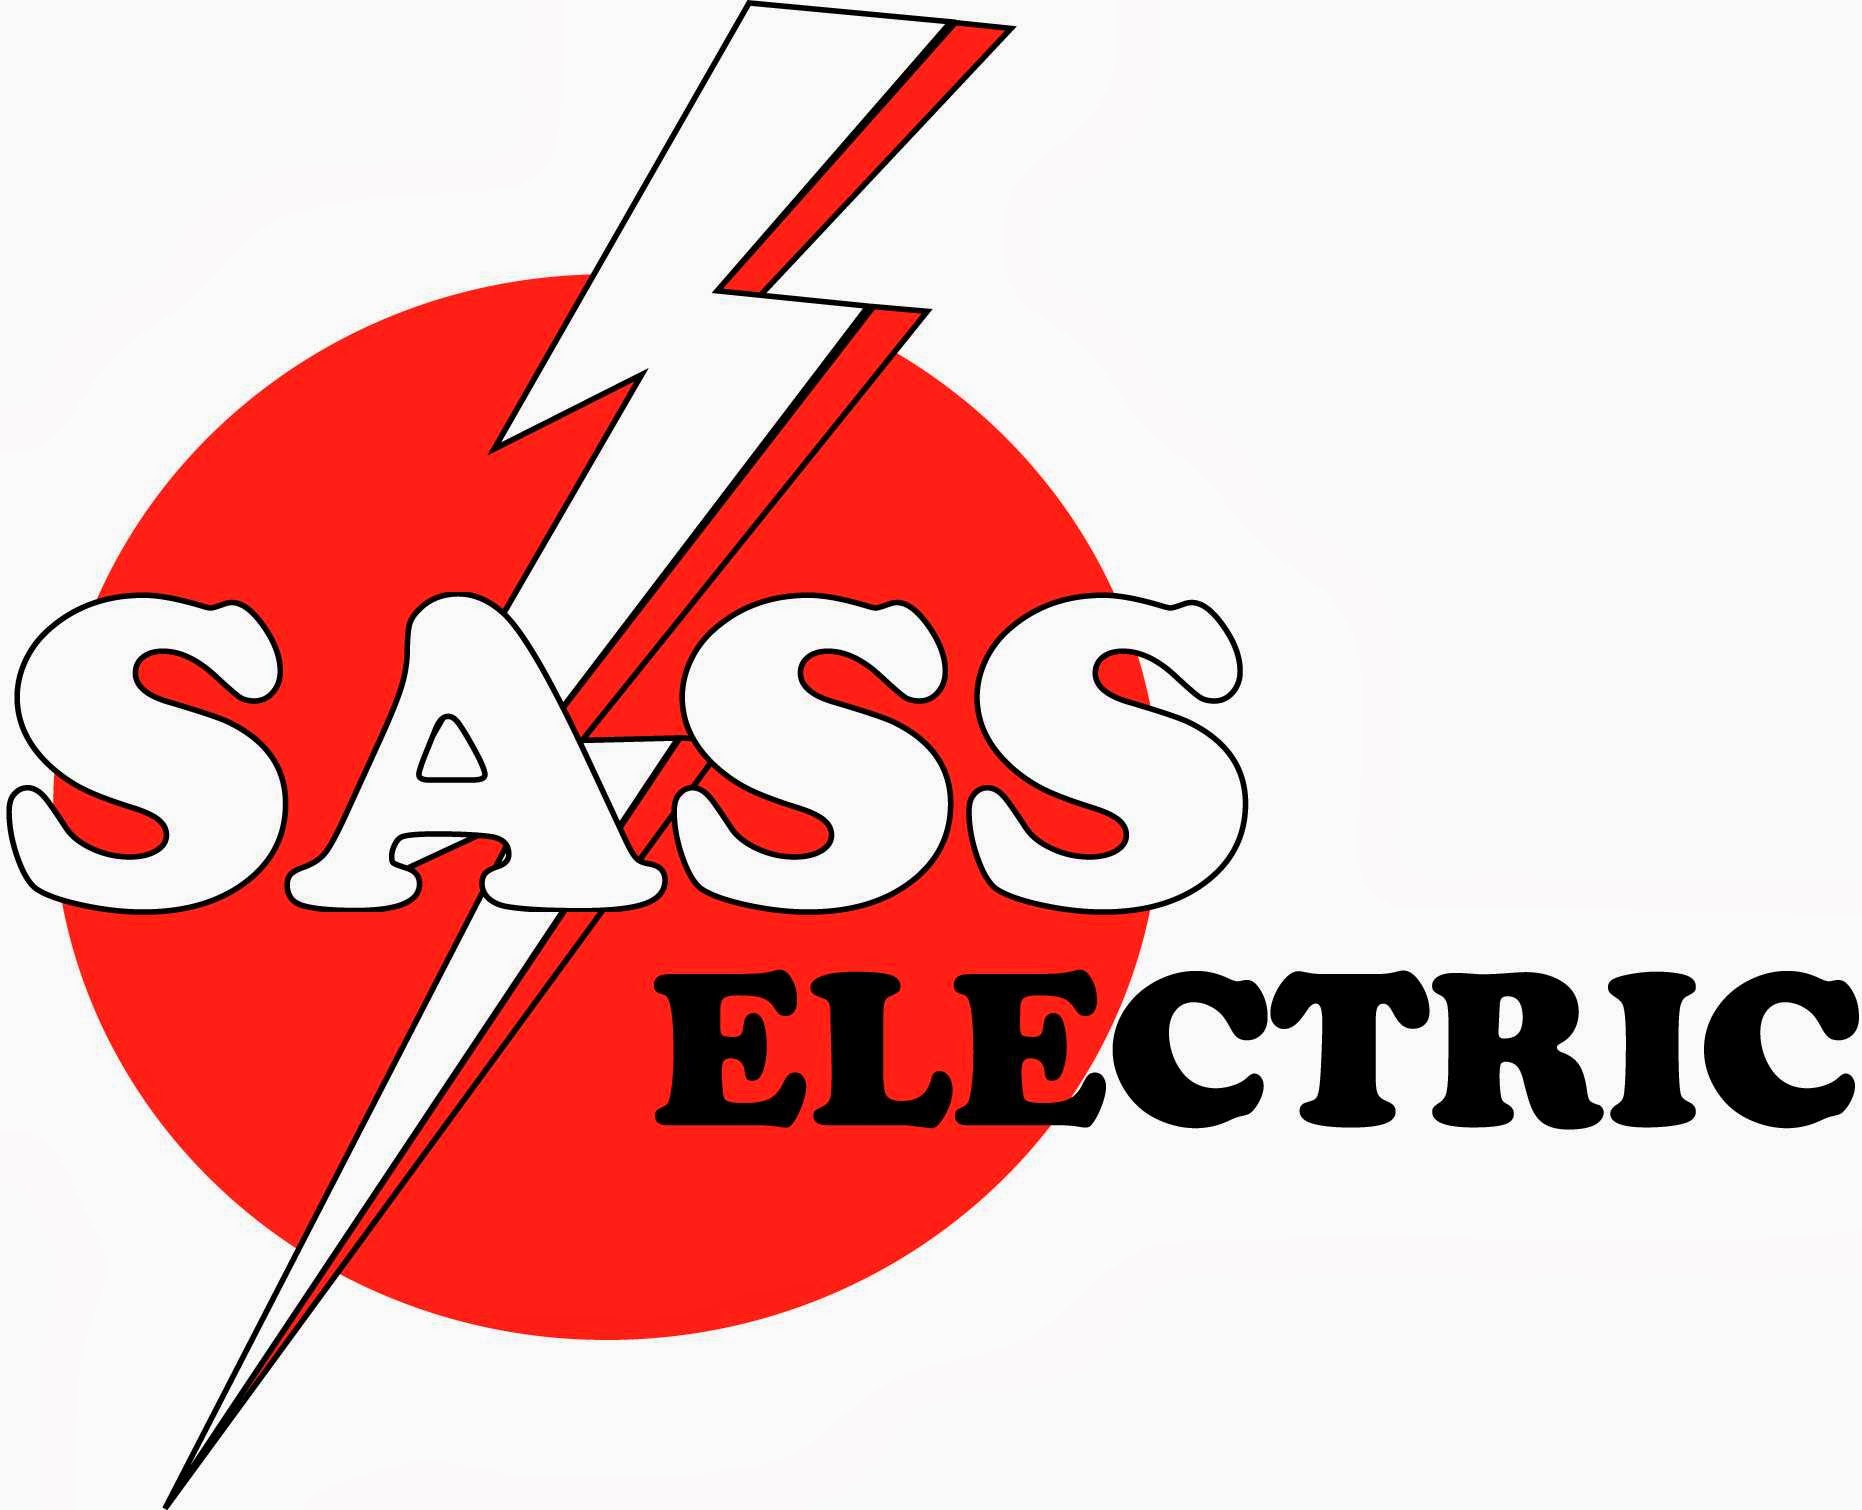 Sass Electric